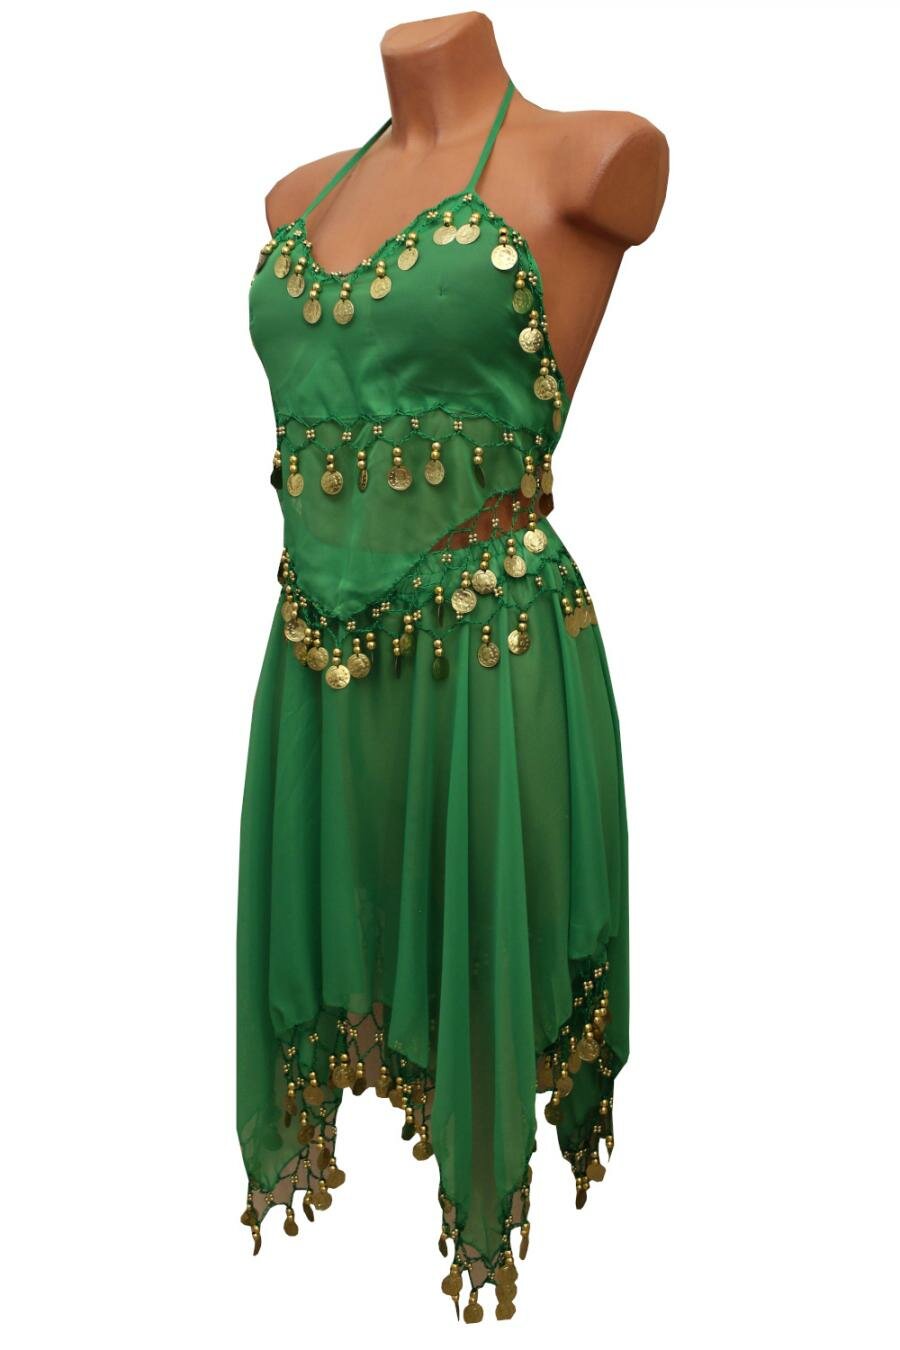 Карнавальные костюмы и аксессуары для праздника Восточная танцовщица зеленая женский LU1145-5 ChiMagNa 42-44рр S/M